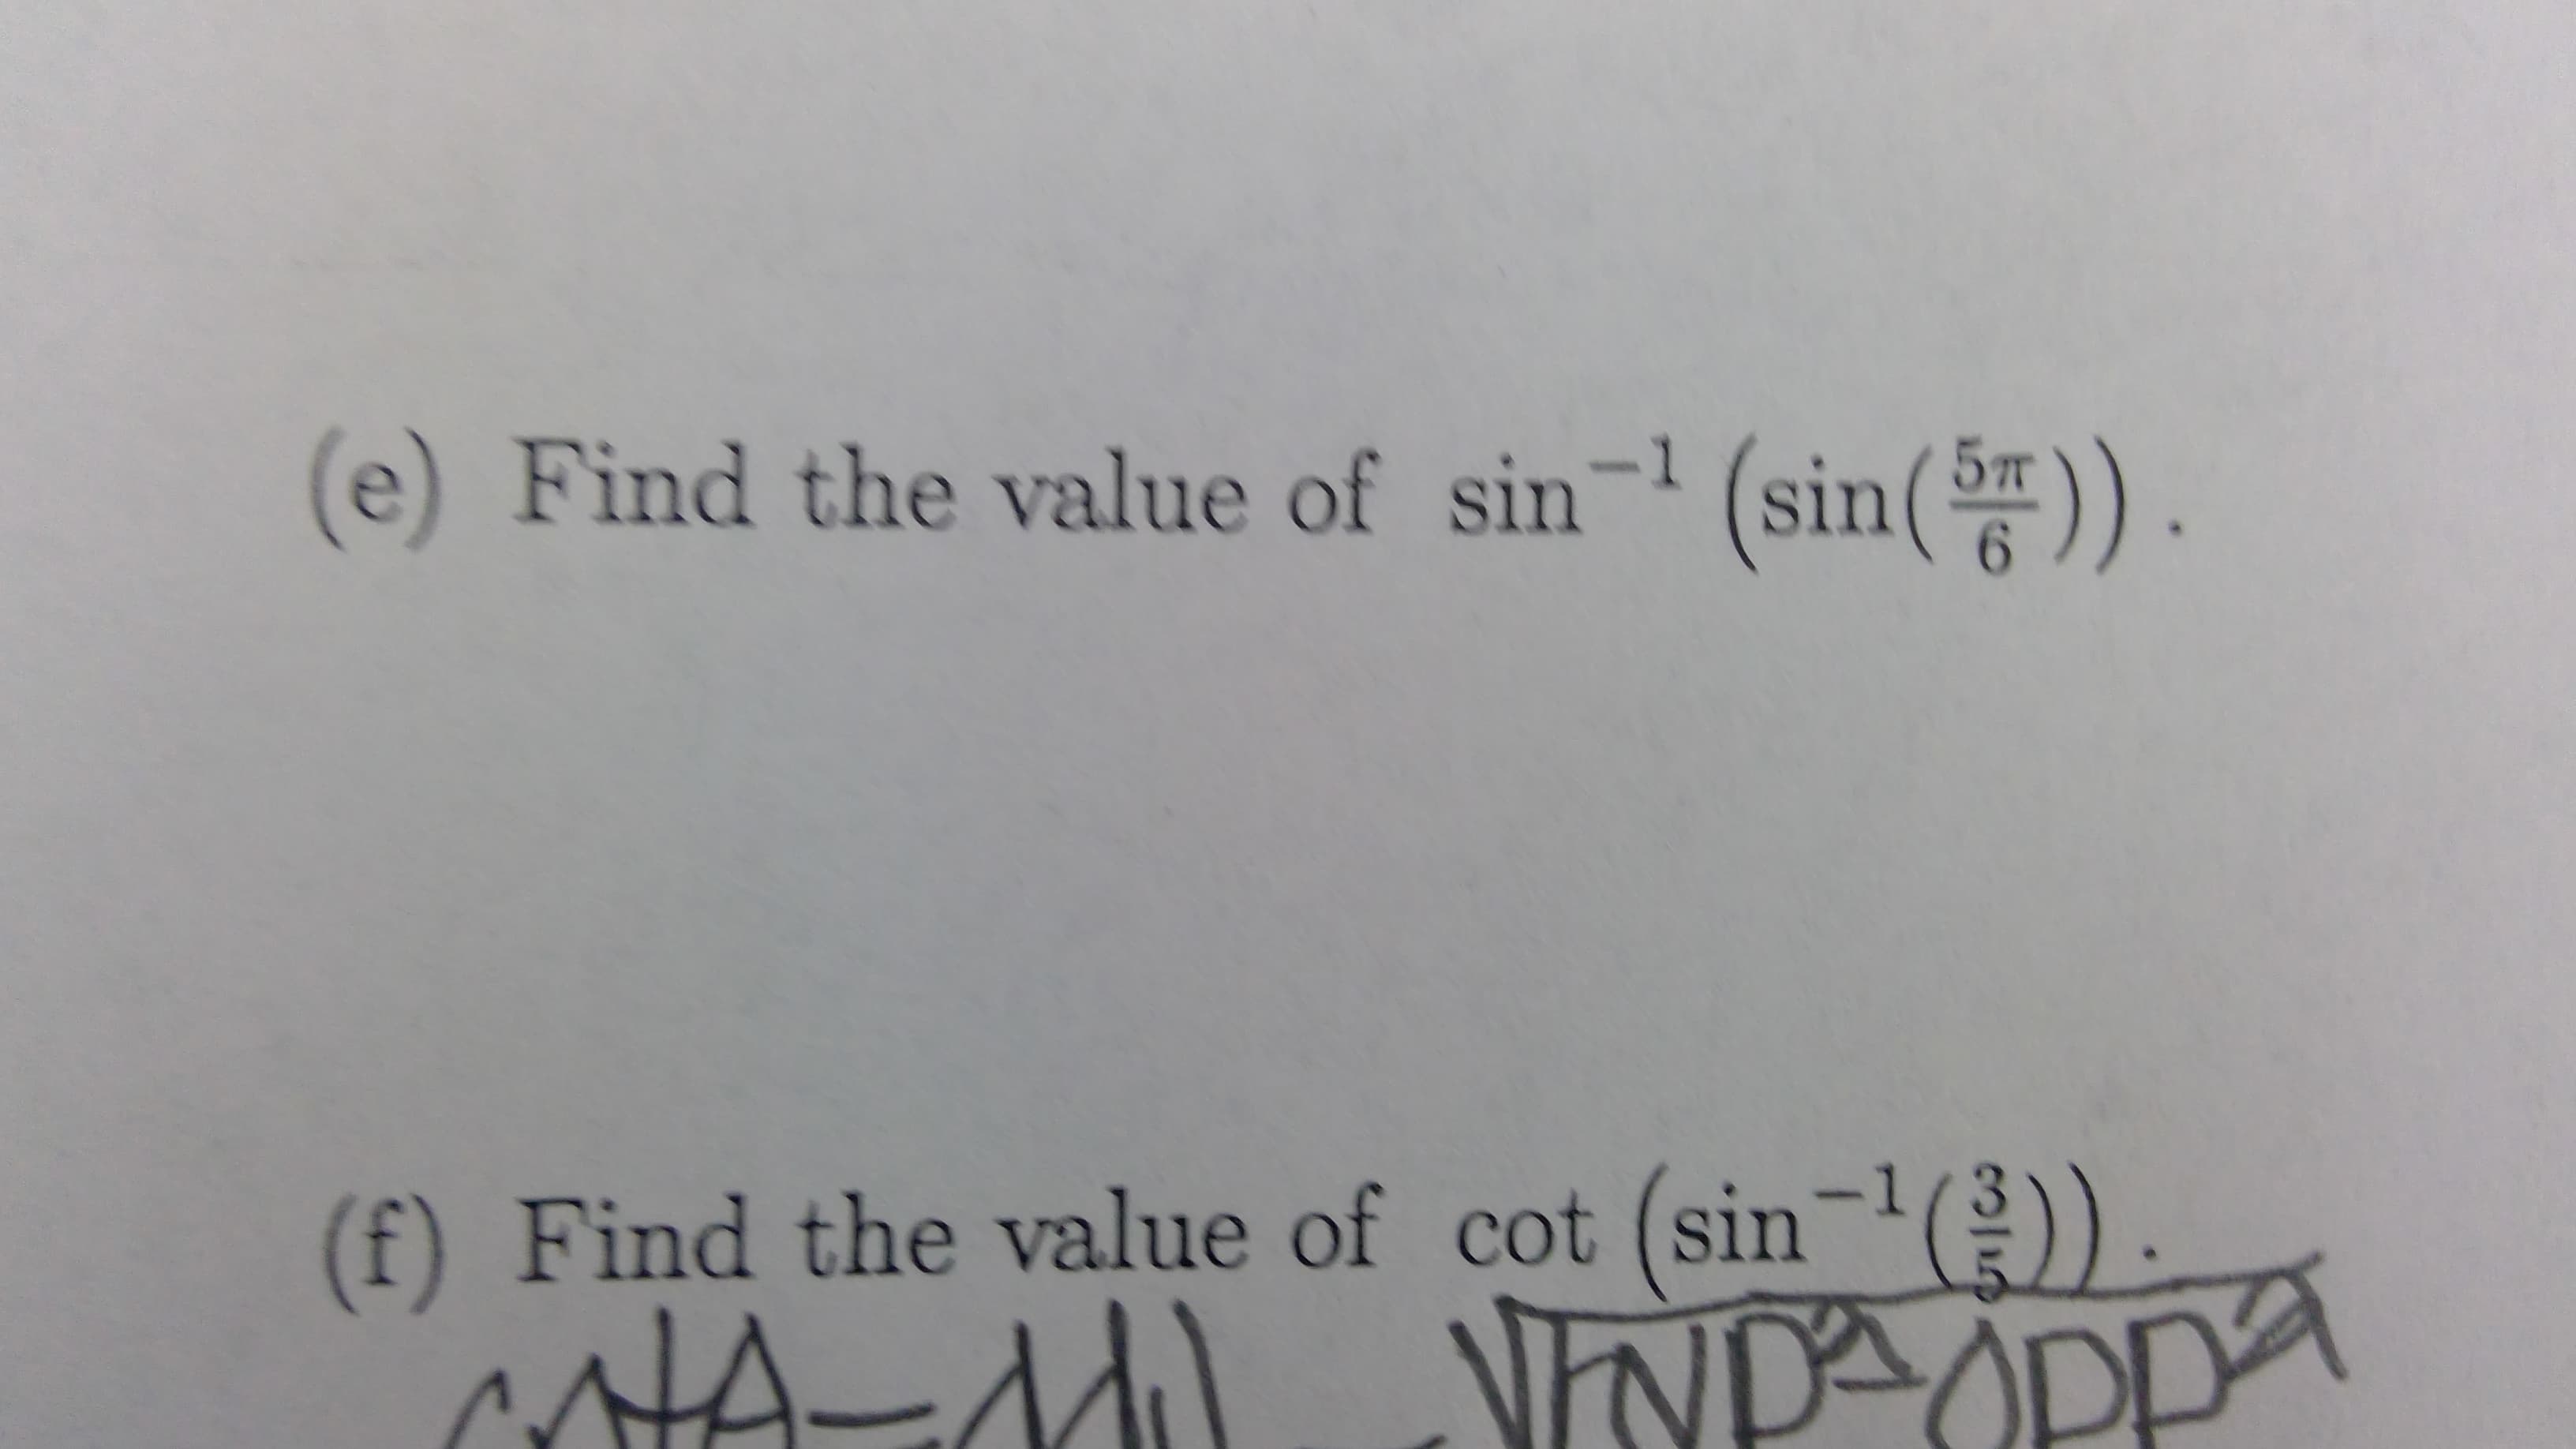 (e) Find the value of sin- (sin()).
5т
.
(f) Find the value of cot (sin-)
cotA-d) NNDAOPPA
